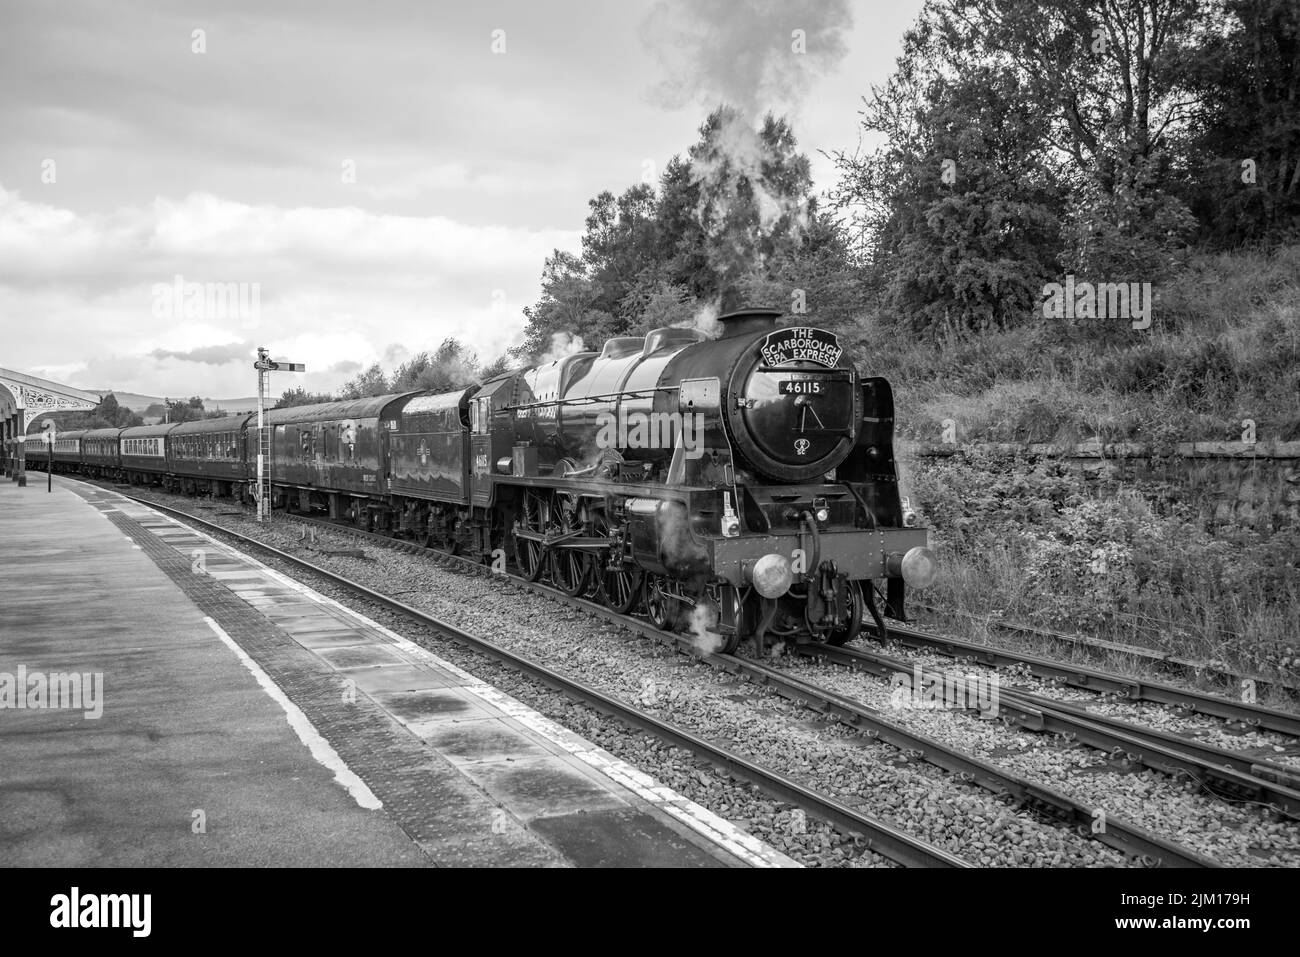 La locomotive à vapeur Scots Guardsman part de la gare de Hellifield en direction de Scarborough (désignée comme Scarborough Spa Express). Banque D'Images